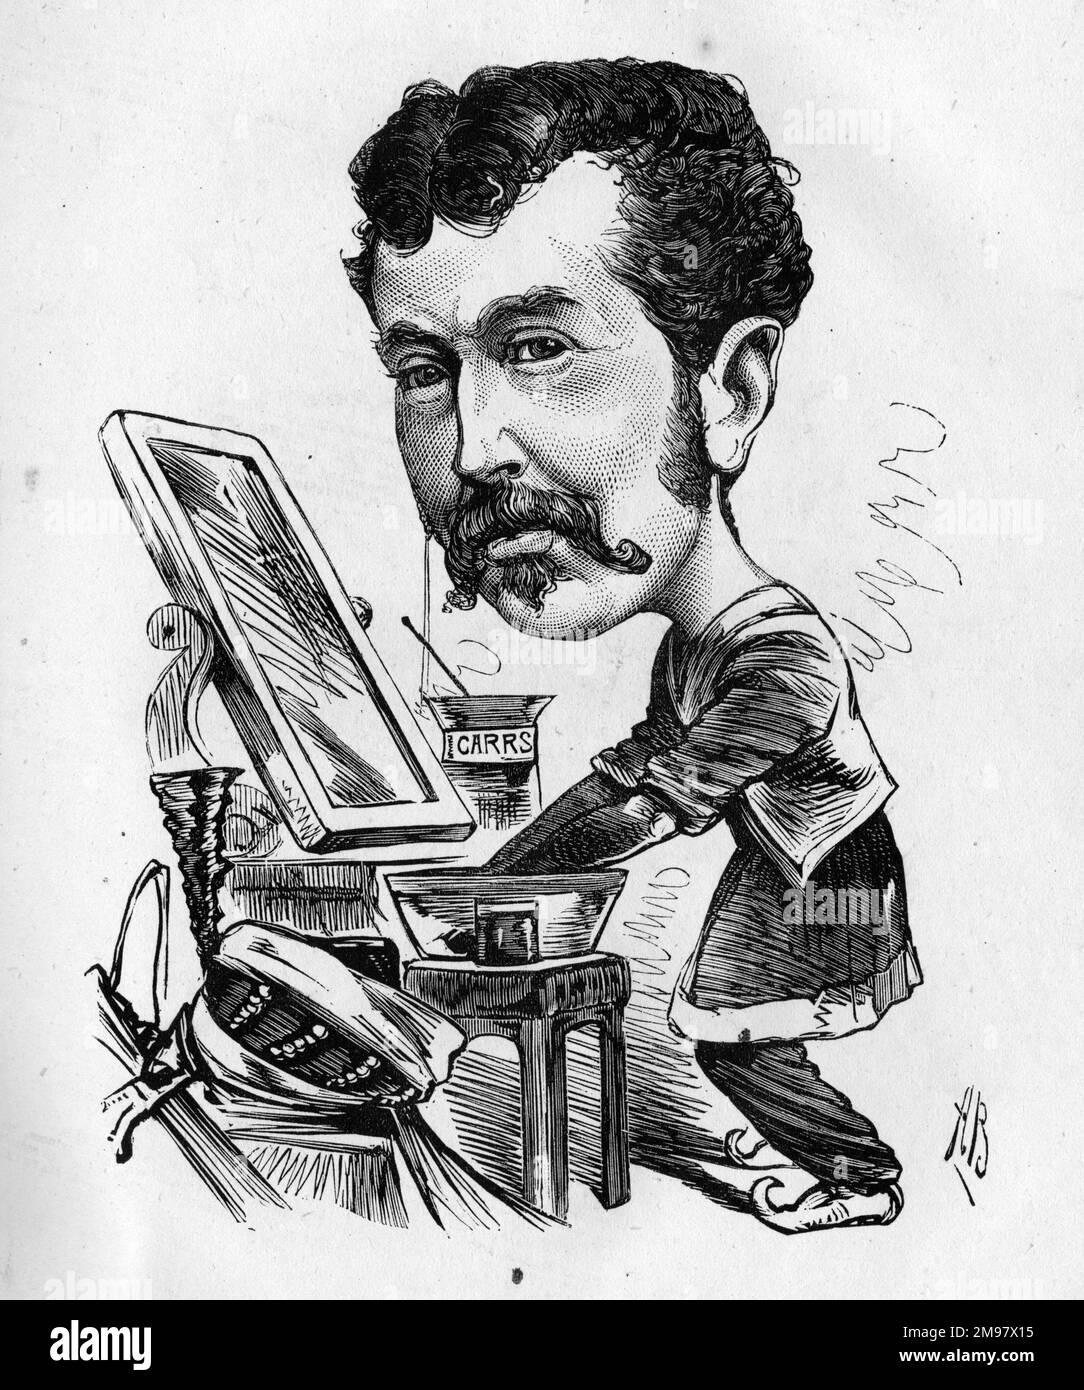 Caricatura de Charles Lickfold Warner (1846-1909), actor inglés, visto aquí preparándose en su vestuario. Poner en la pintura de la guerra. Foto de stock